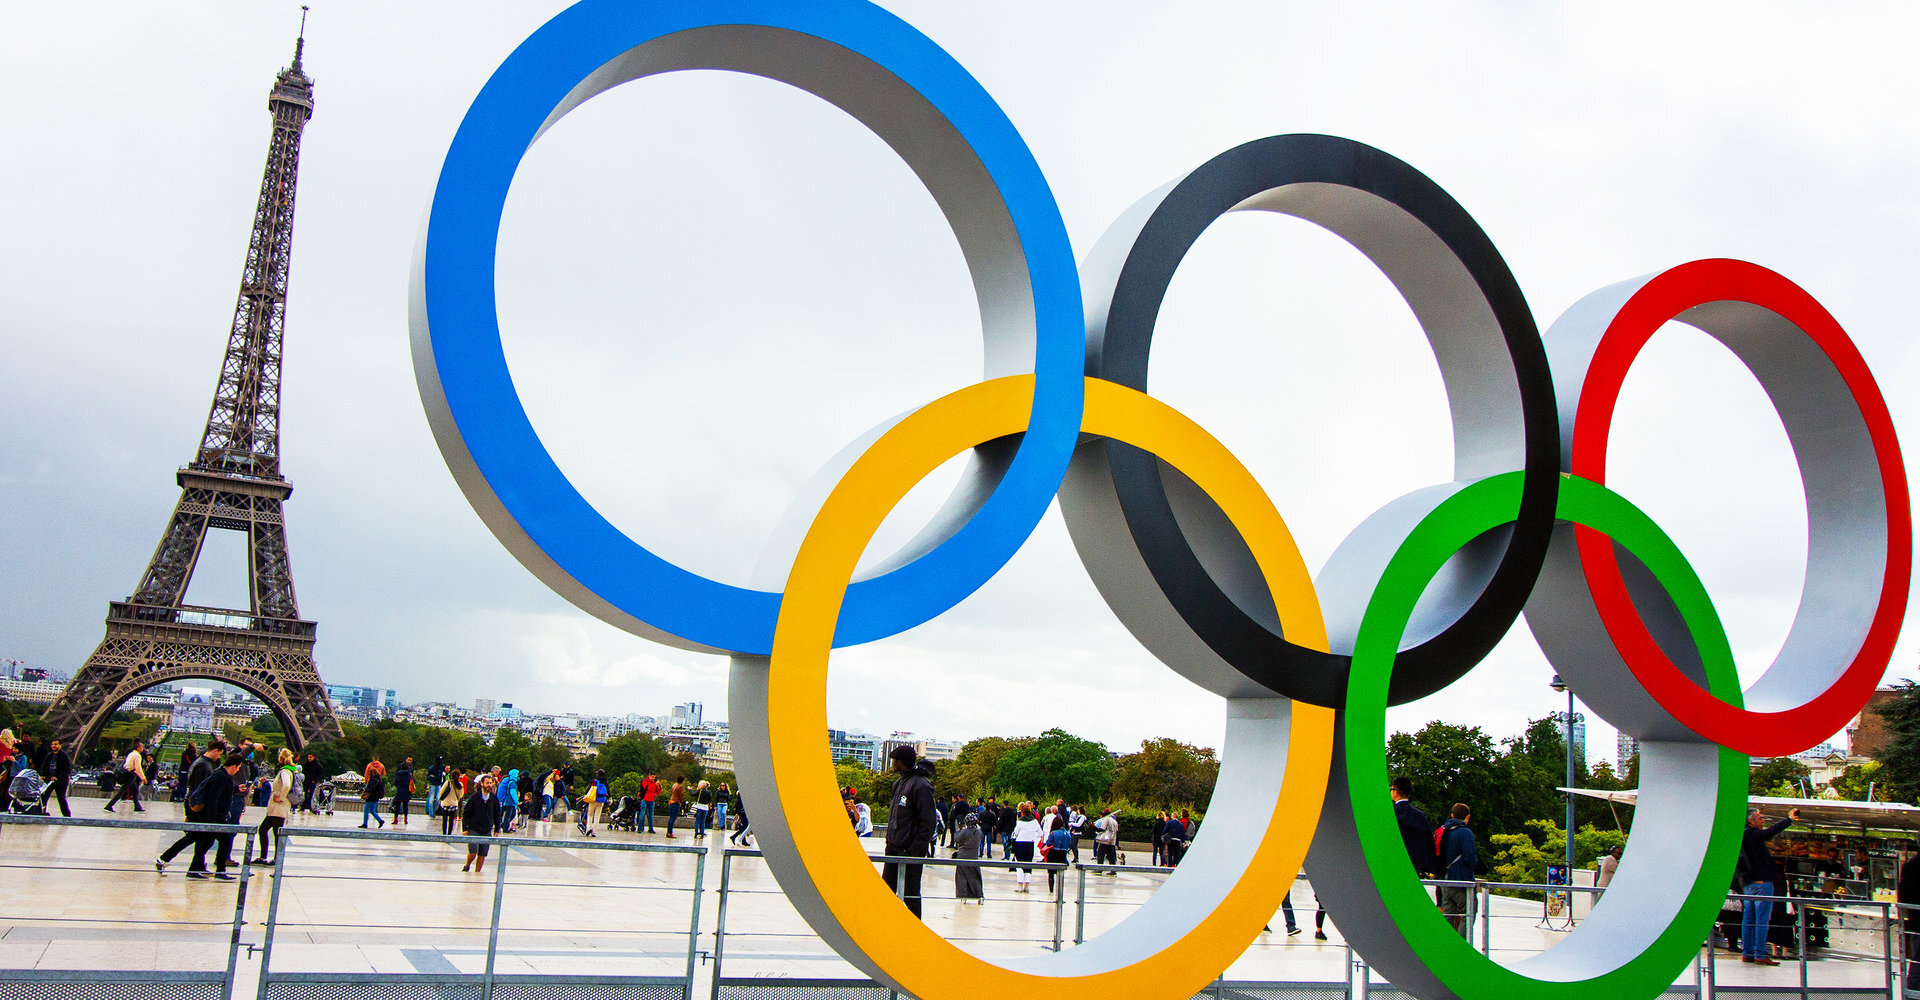 МОК обсудит реализацию критериев по допуску атлетов РФ до ОИ на следующей неделе